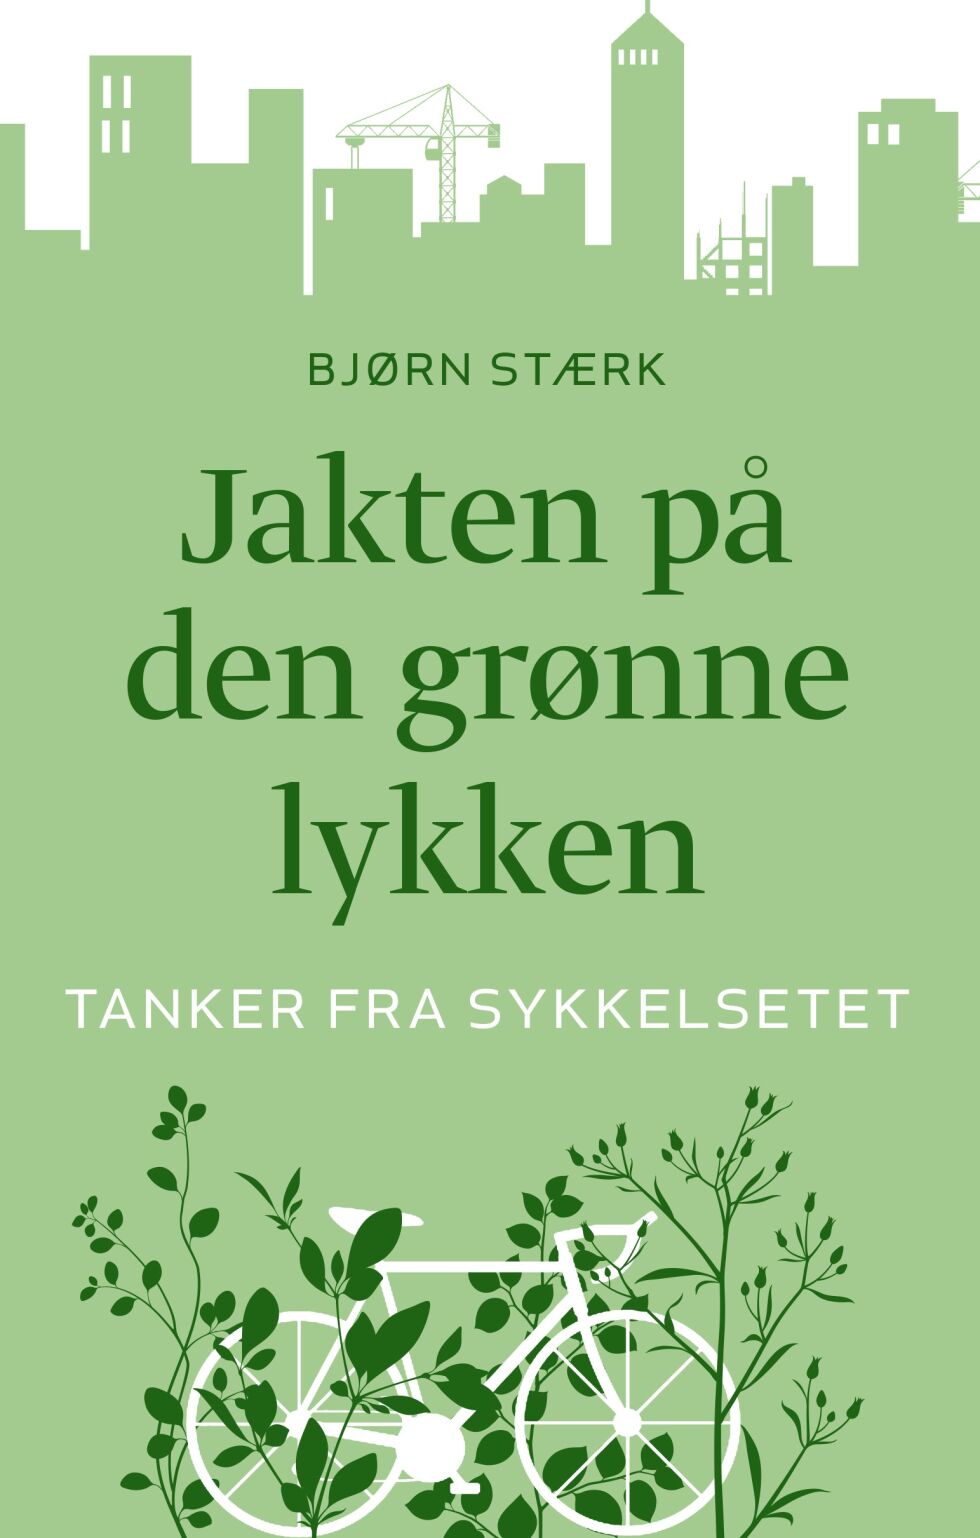 Jakten på den grønne lykken er Bjørn Stærk si tredje bok for Humanist forlag.